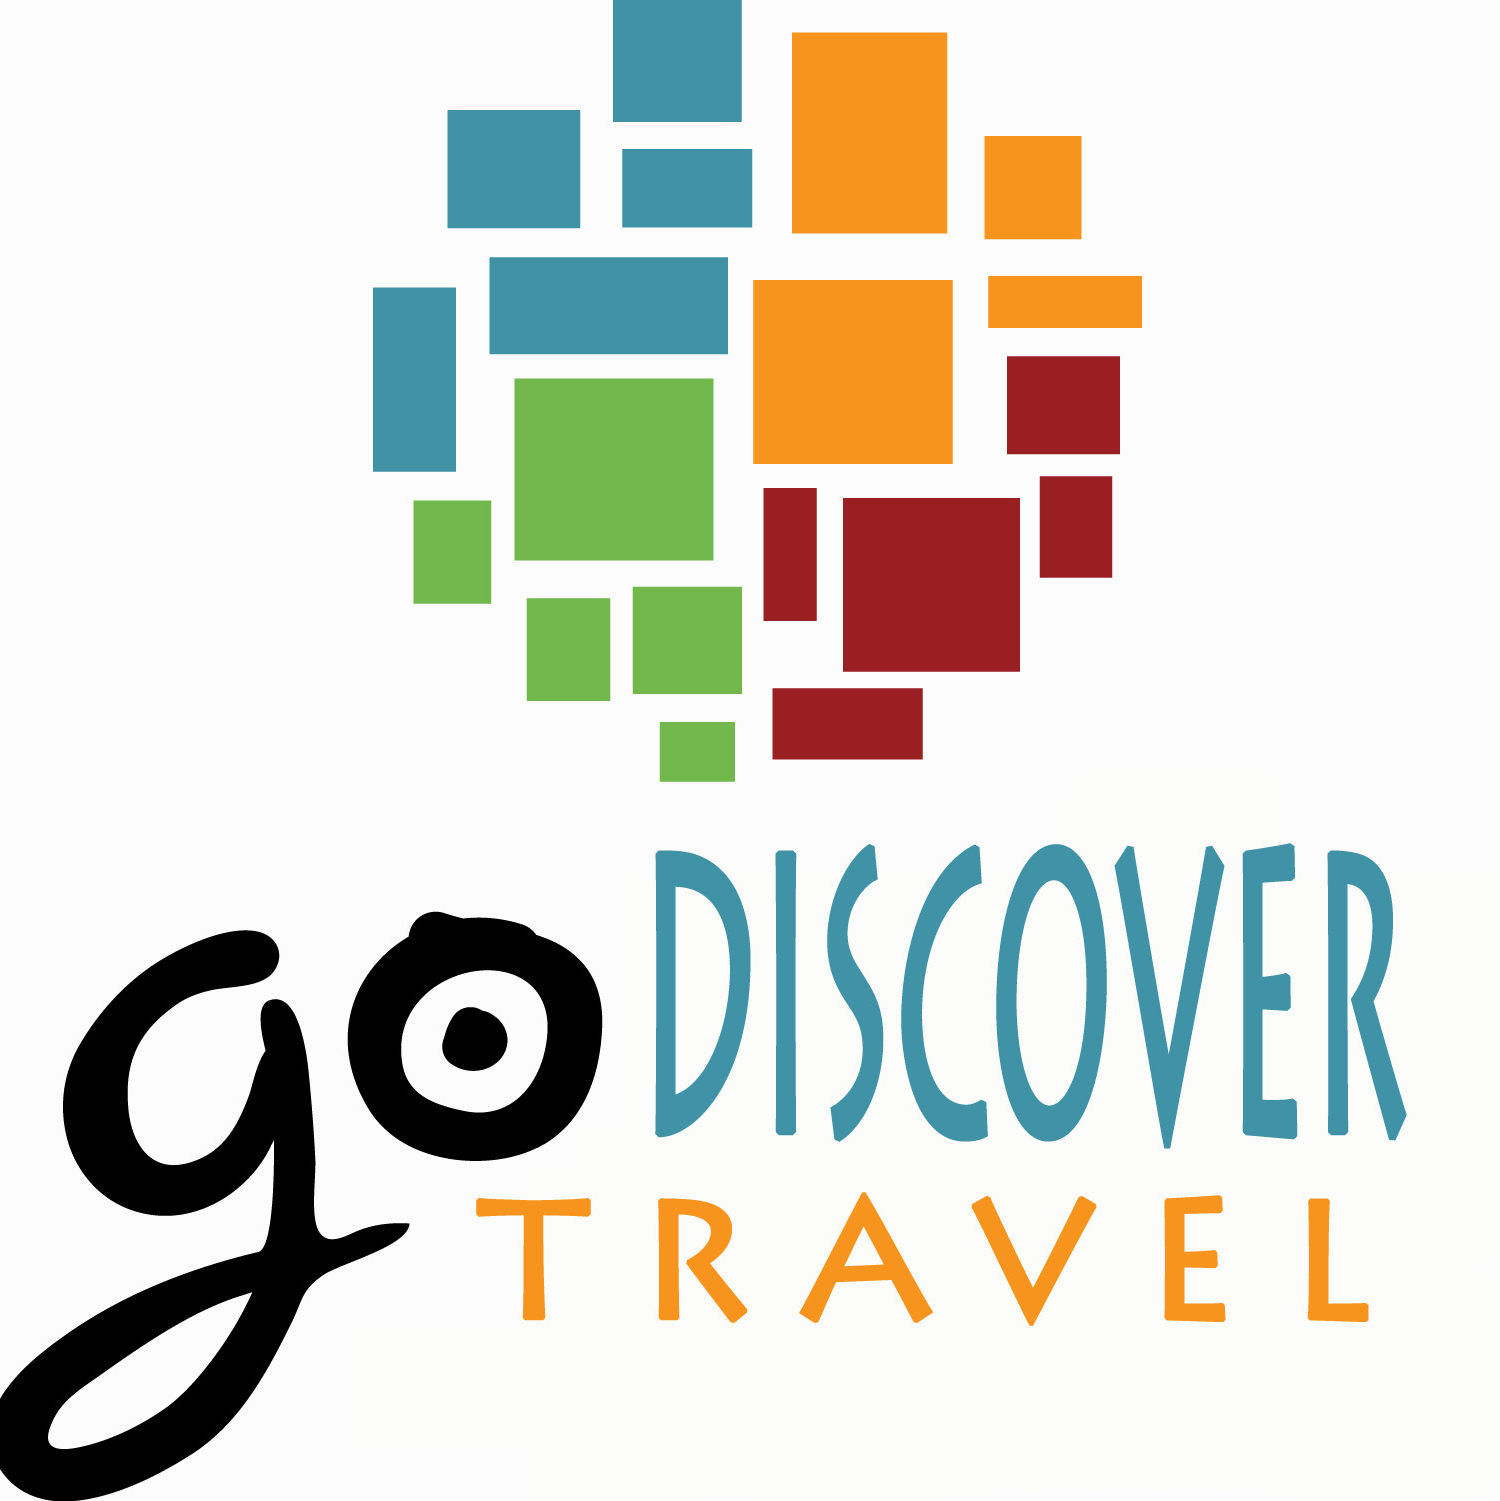 Go Discover Travel Inc